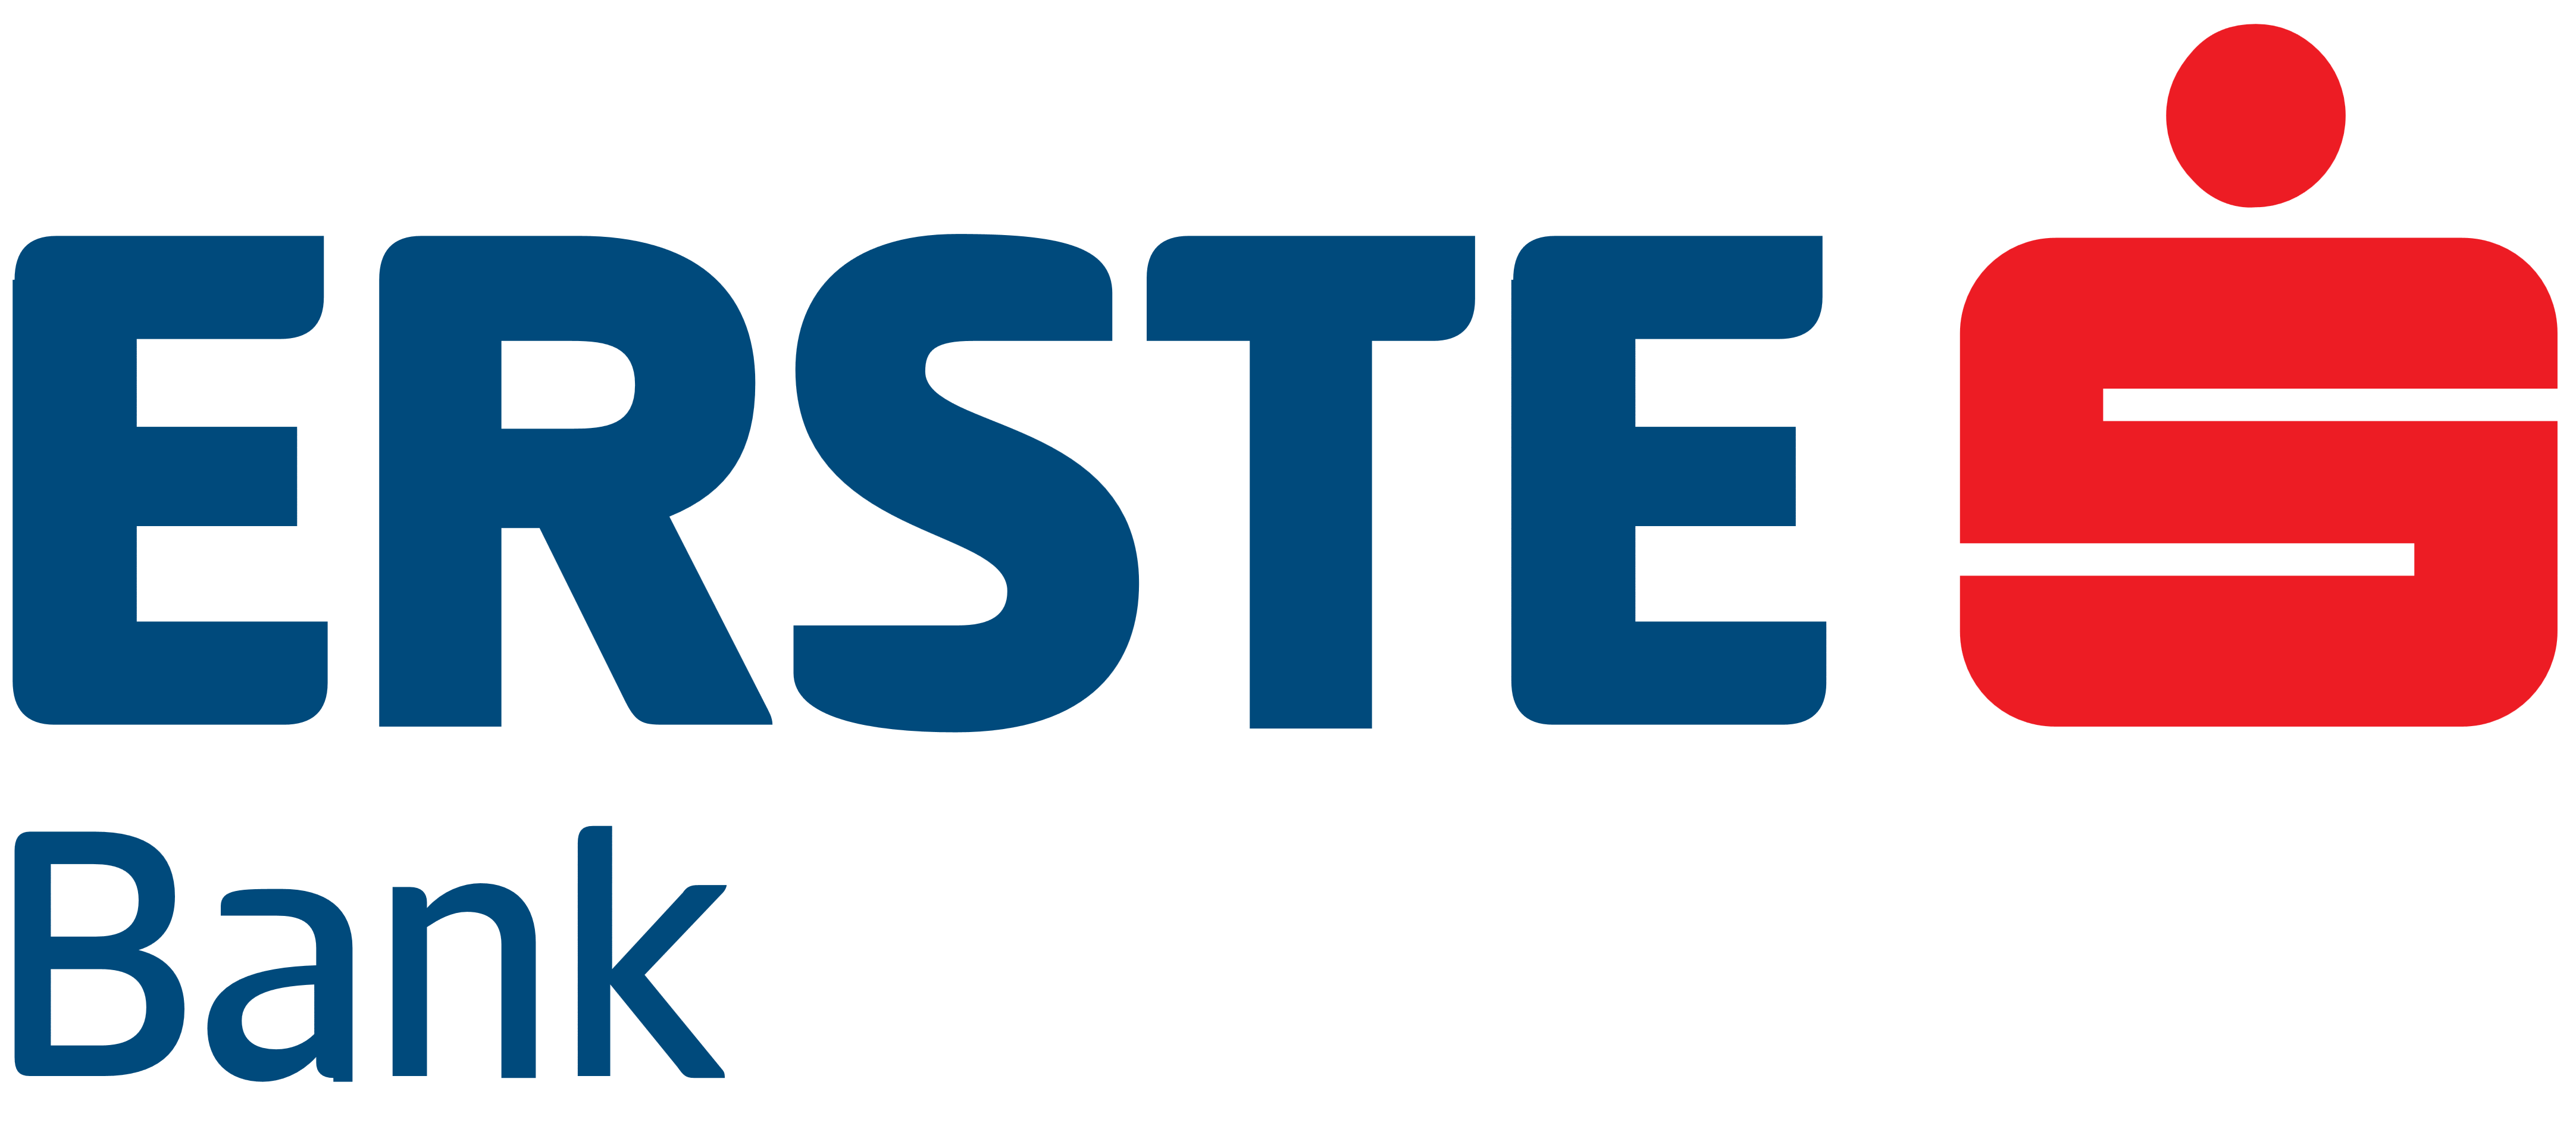 Erste Bank logo, logotype